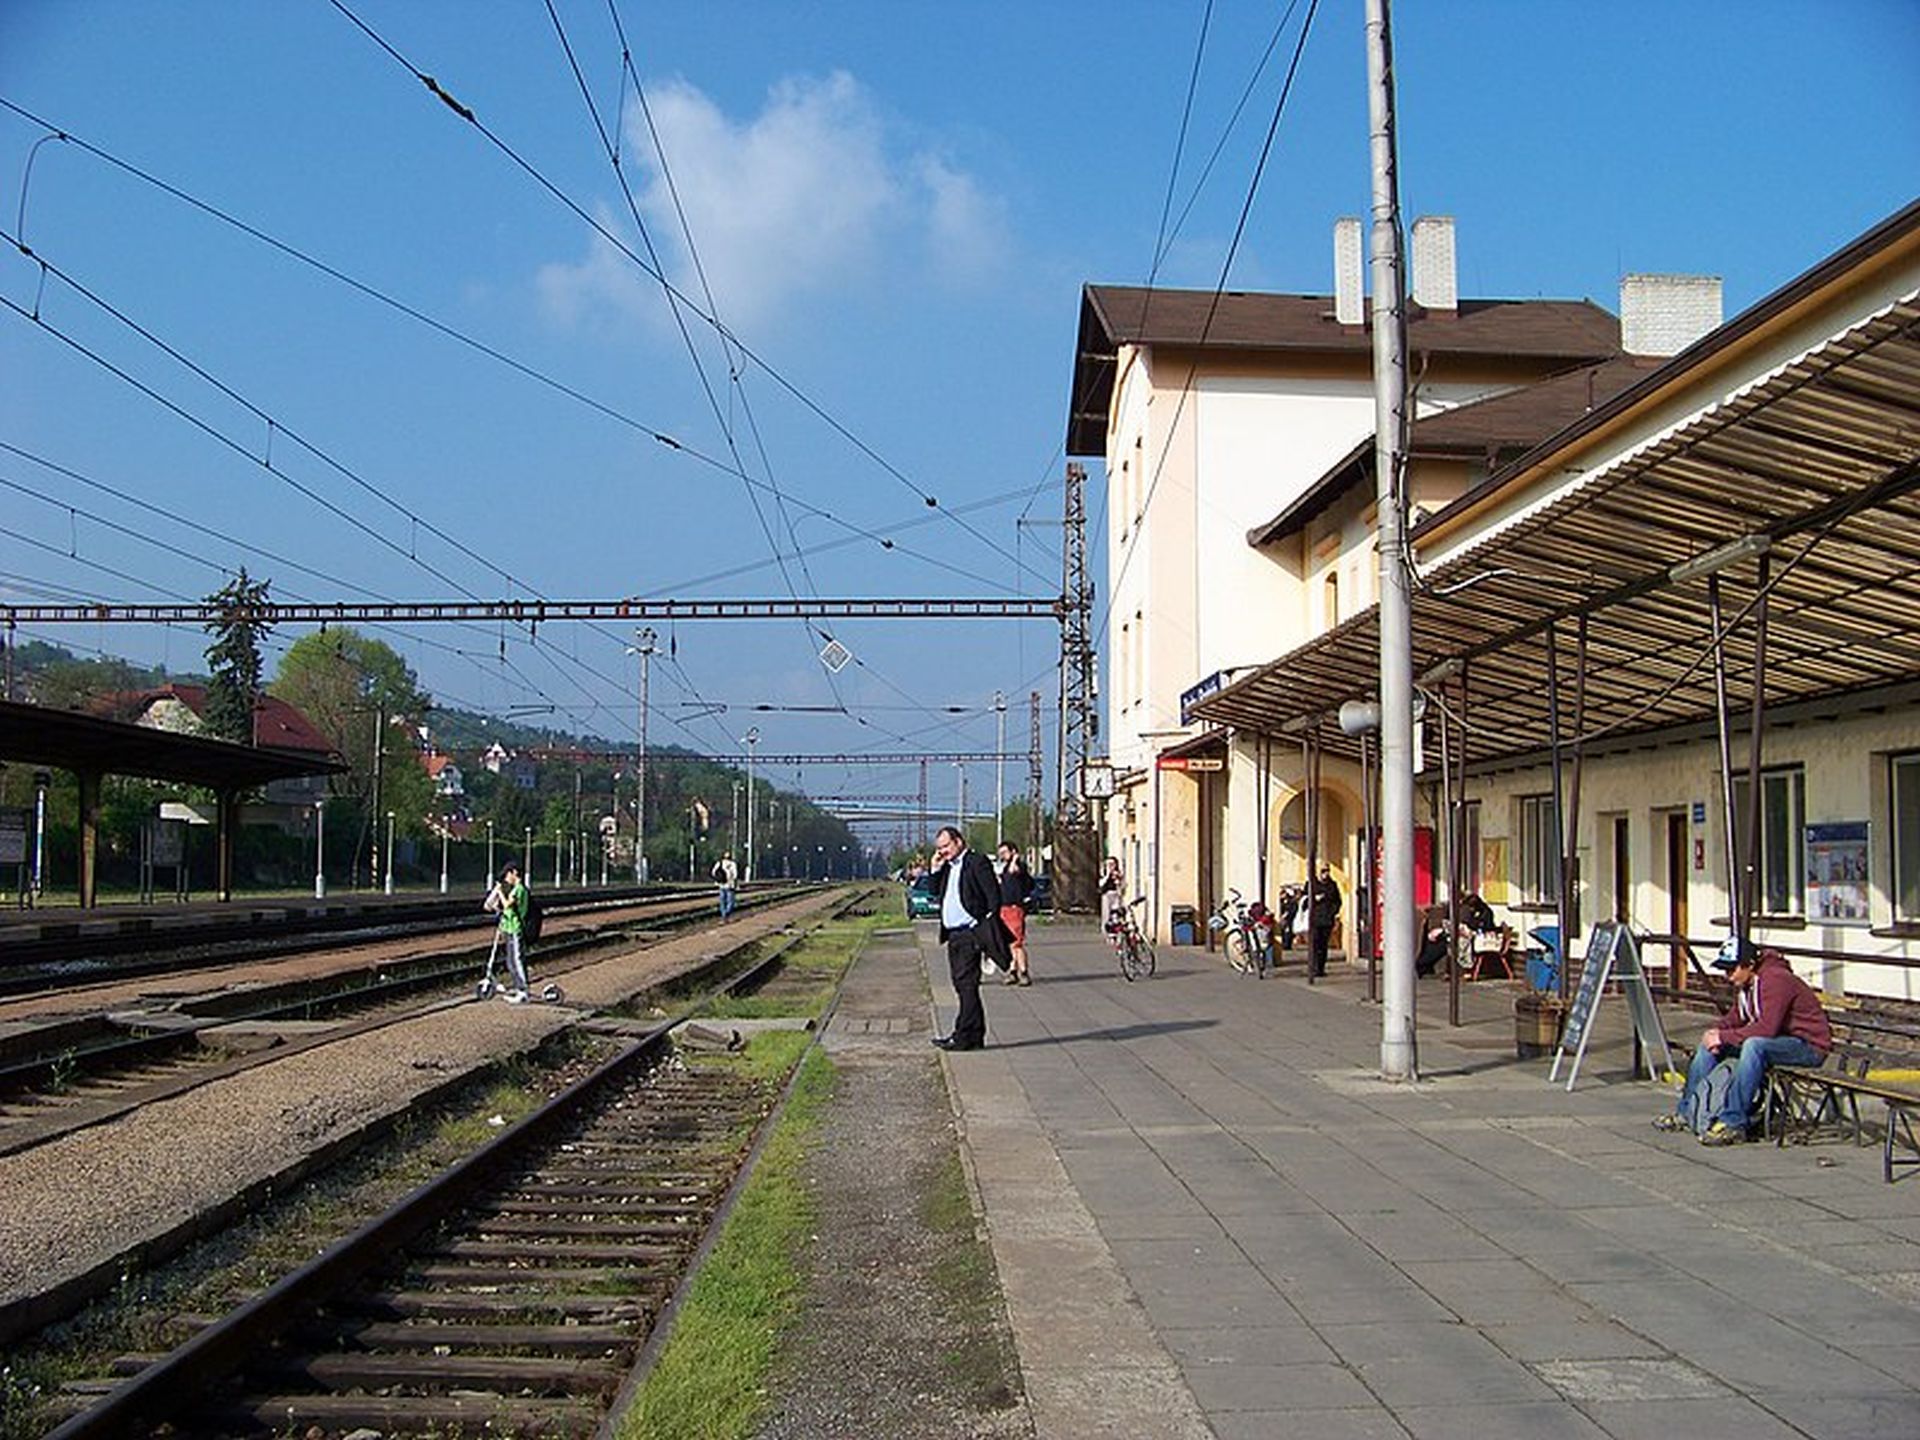 Stanice Praha - Radotín, původní stav. Foto: ŠJů/Wikimedia Commons